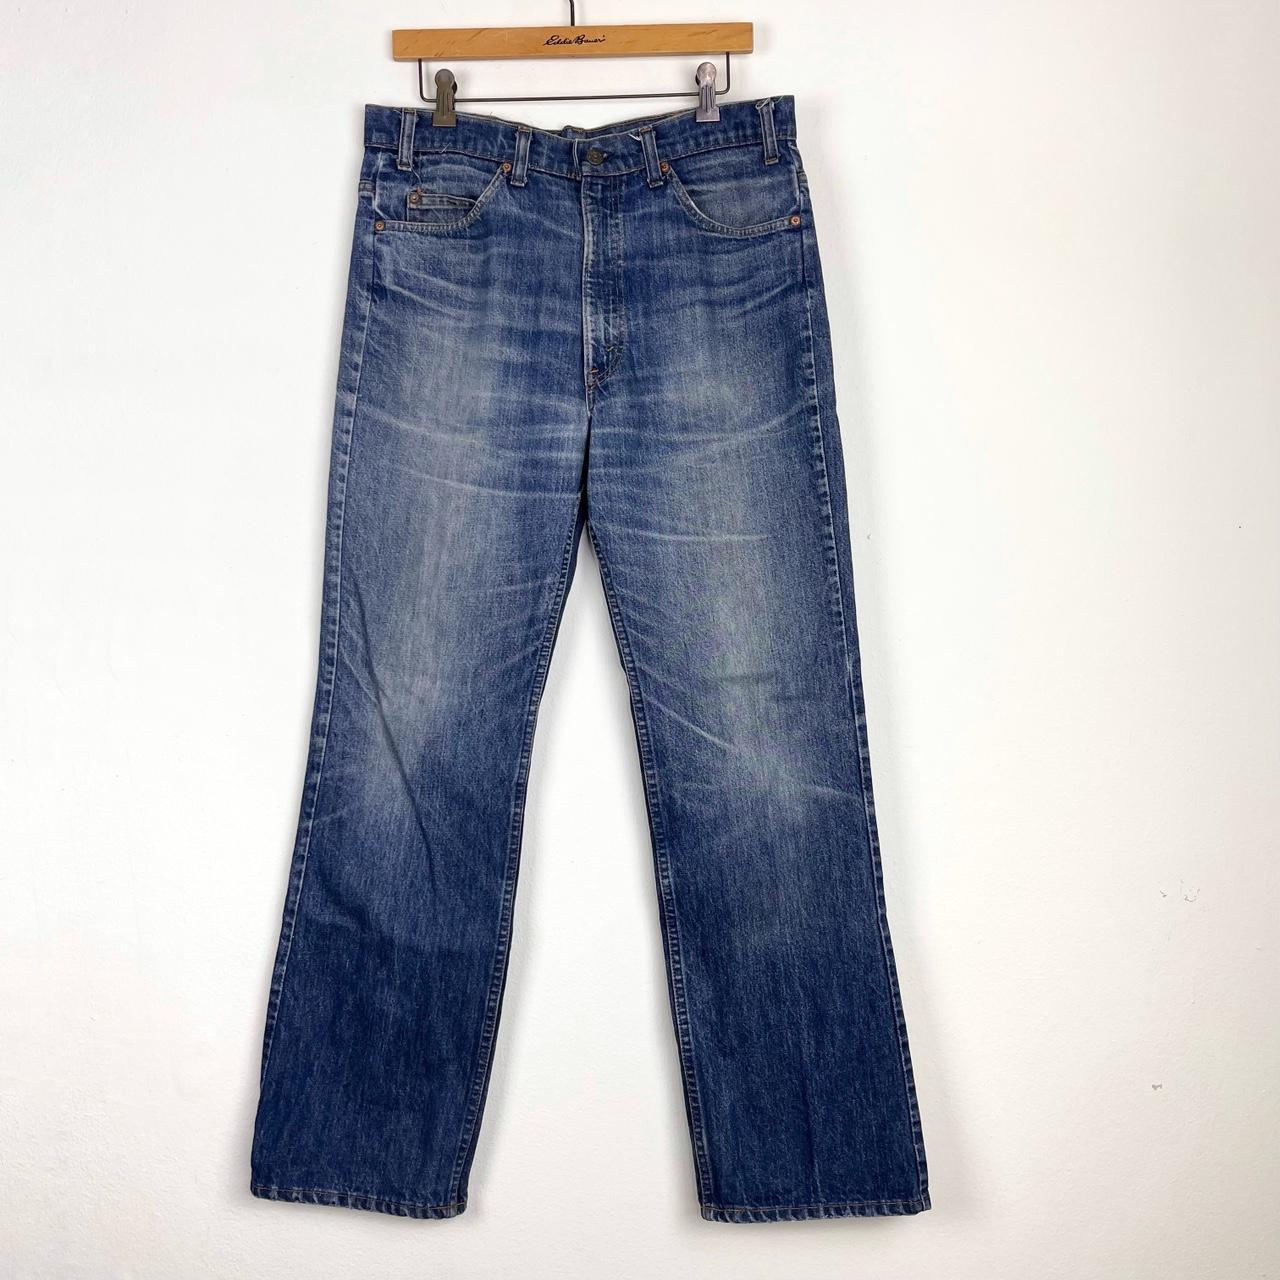 Vintage 80s Levi's 517 Jeans Denim Blue USA Made... - Depop